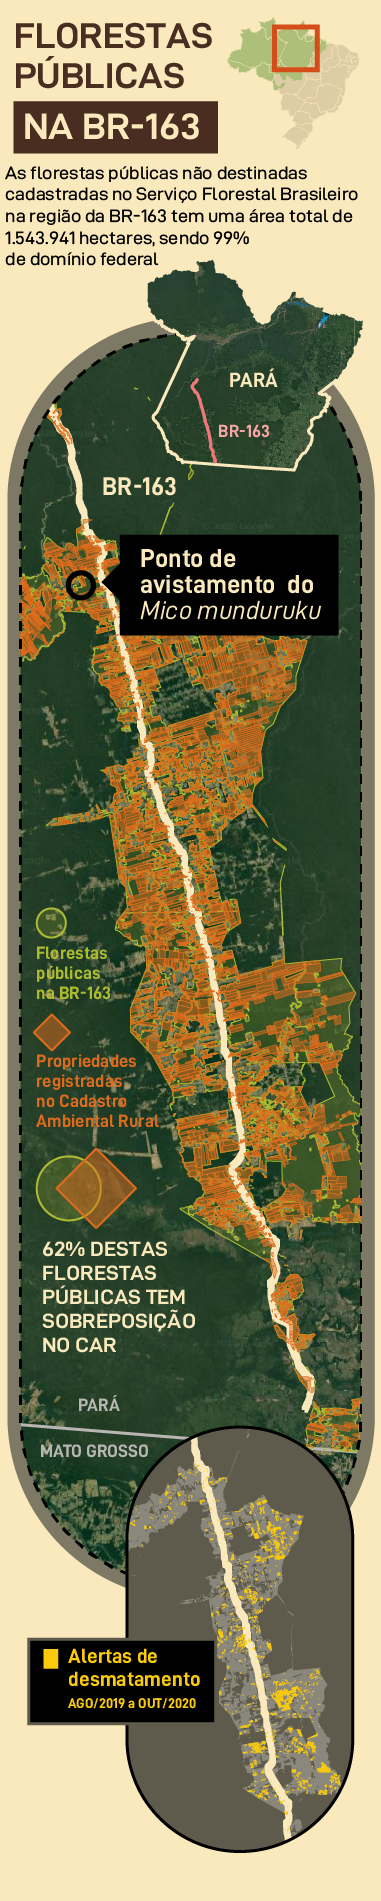 Florestas públicas na BR-163